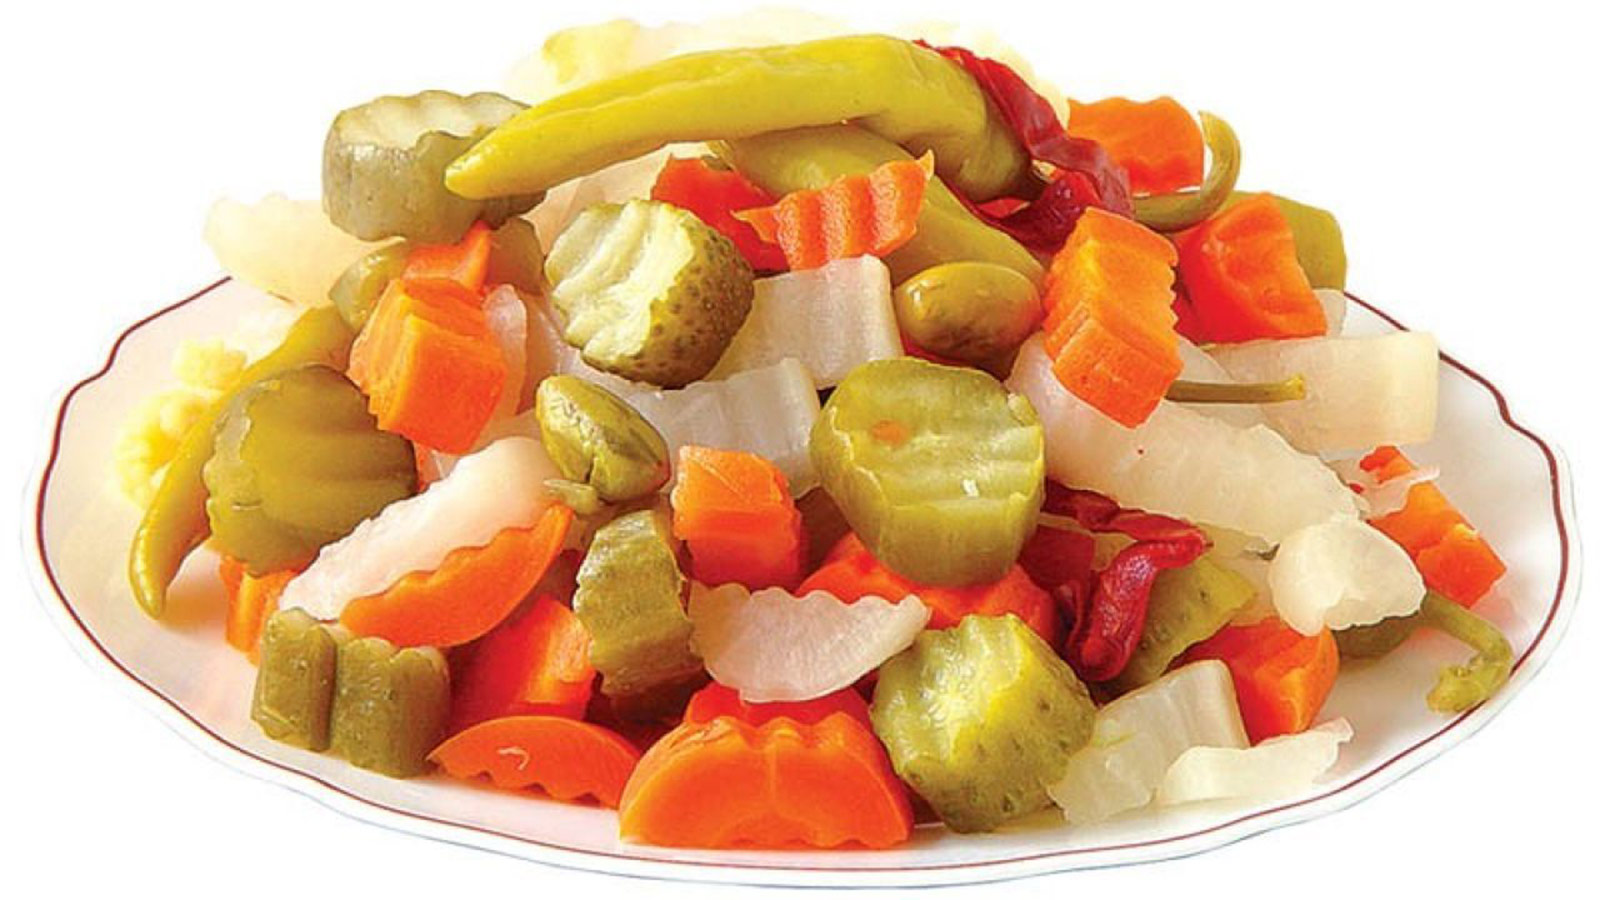 Asian pickled vegetables